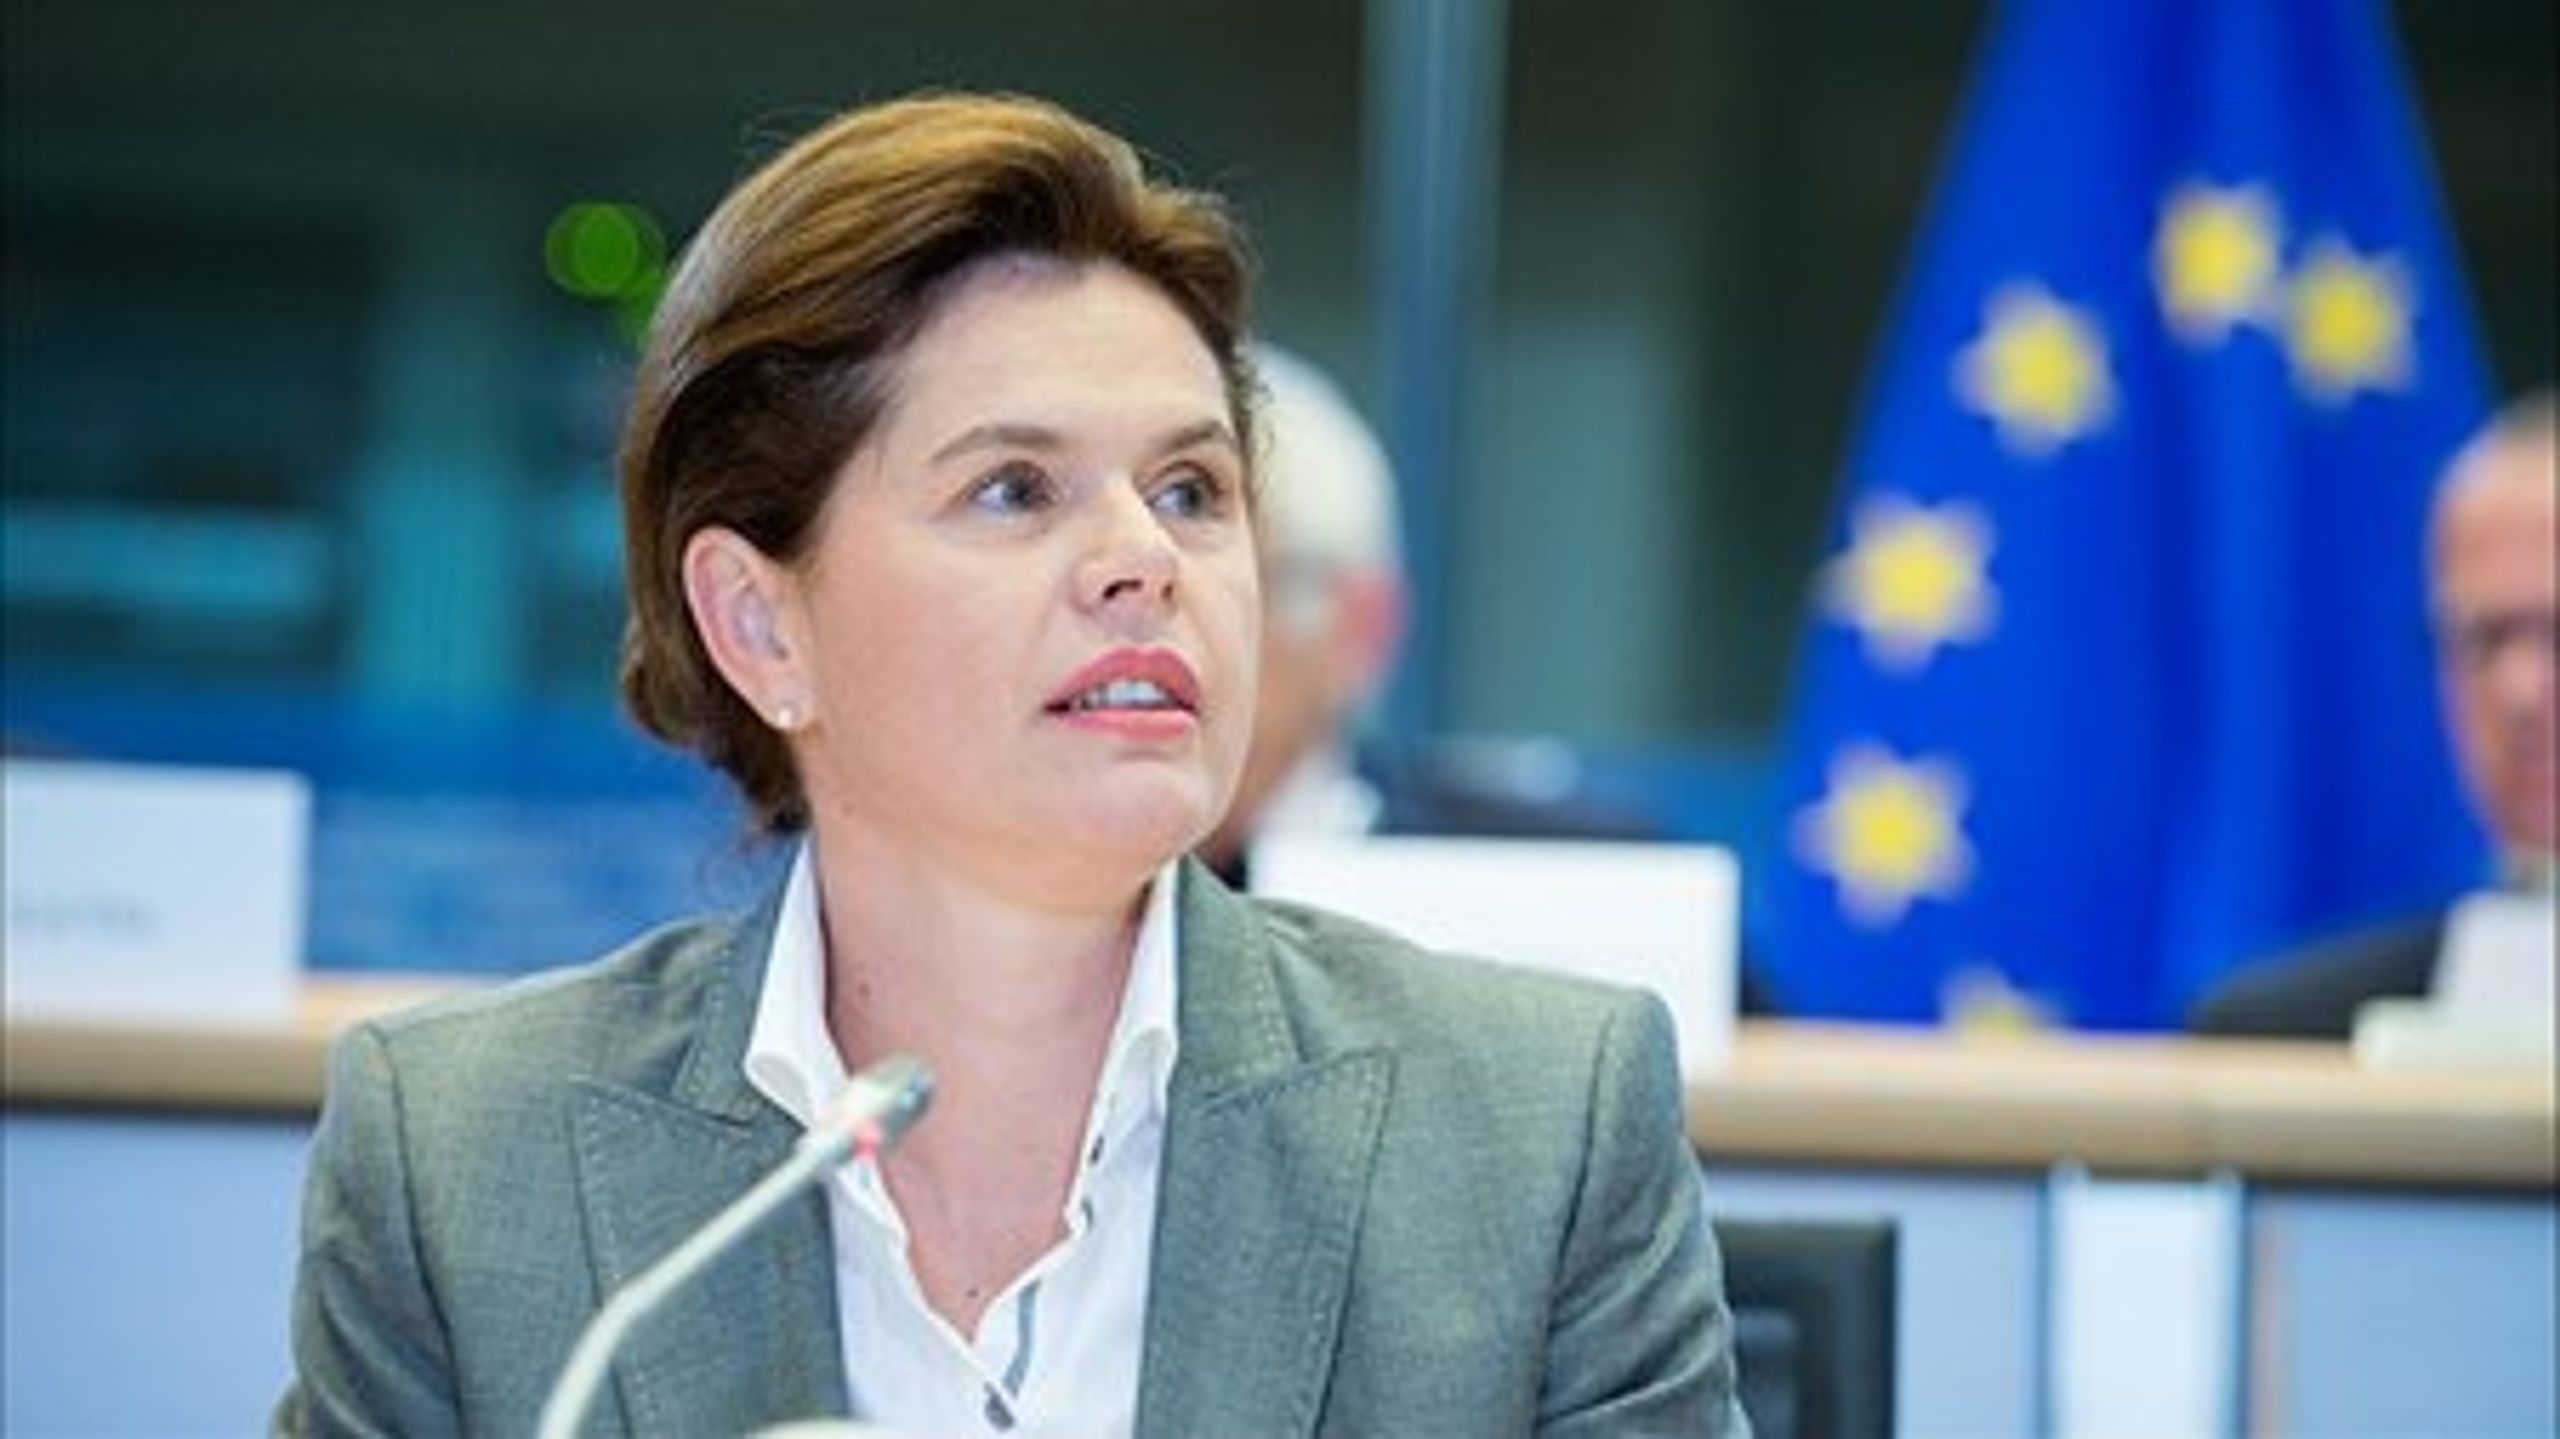 Slovenske&nbsp;Alenka Bratušek skulle mandag eftermiddag svare på, hvad hvordan hun vil udfylde jobbet som EU's kommissær for en energiunion.